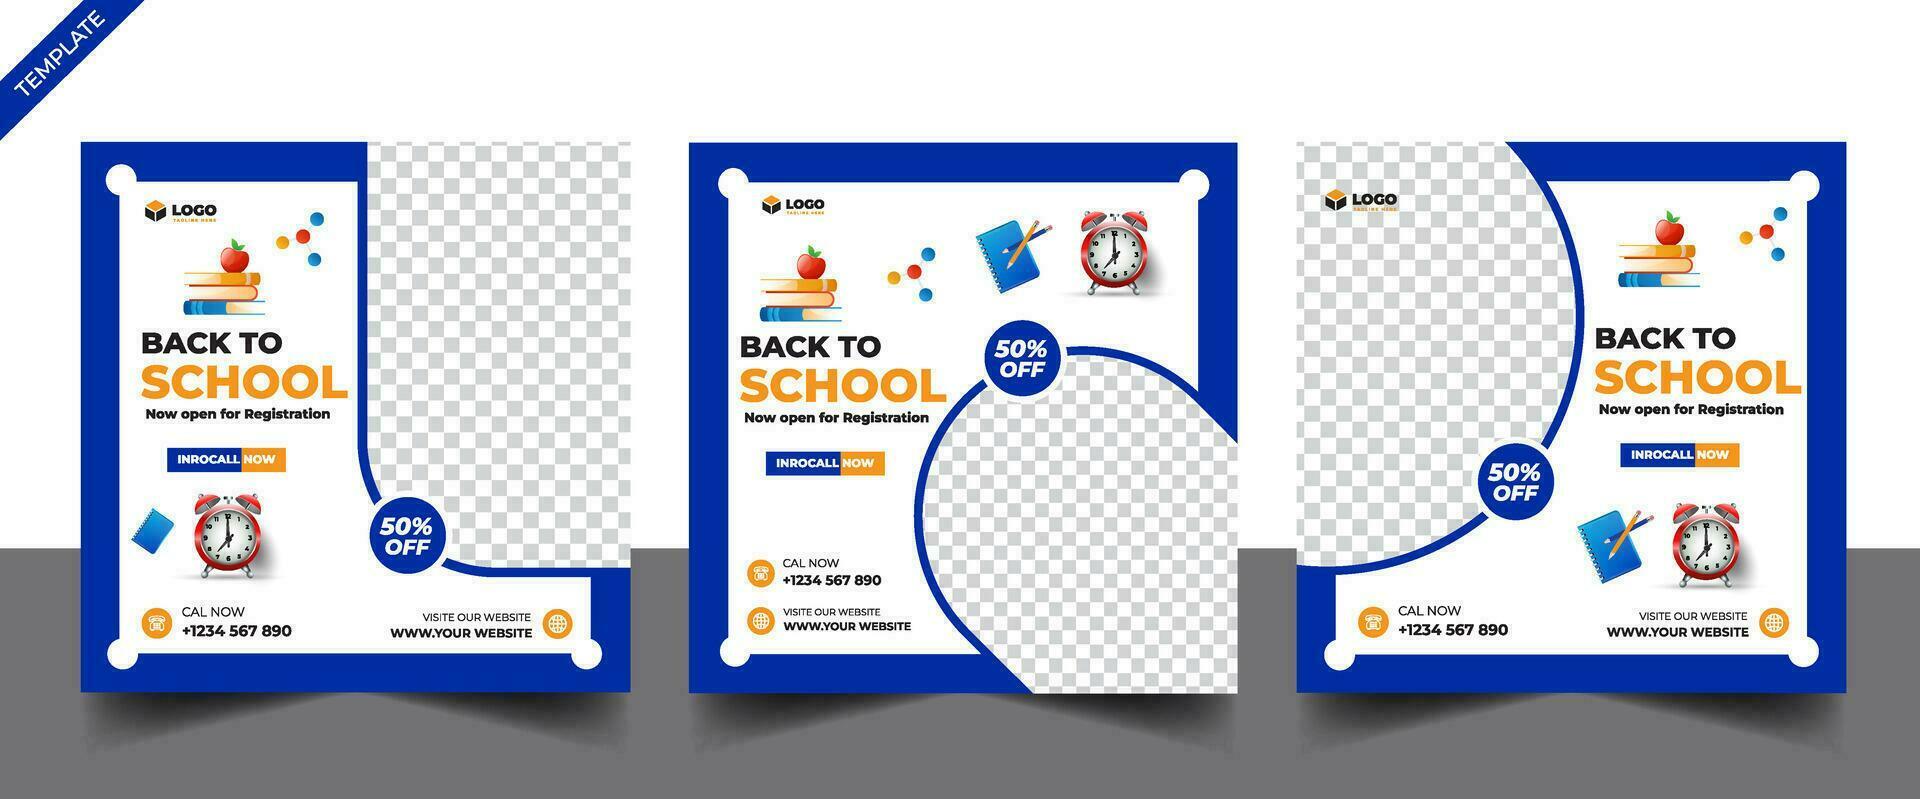 banner de postagem de mídia social de admissão escolar, panfleto quadrado de postagem de mídia social educacional de volta ao modelo de design de banner da web da escola vetor